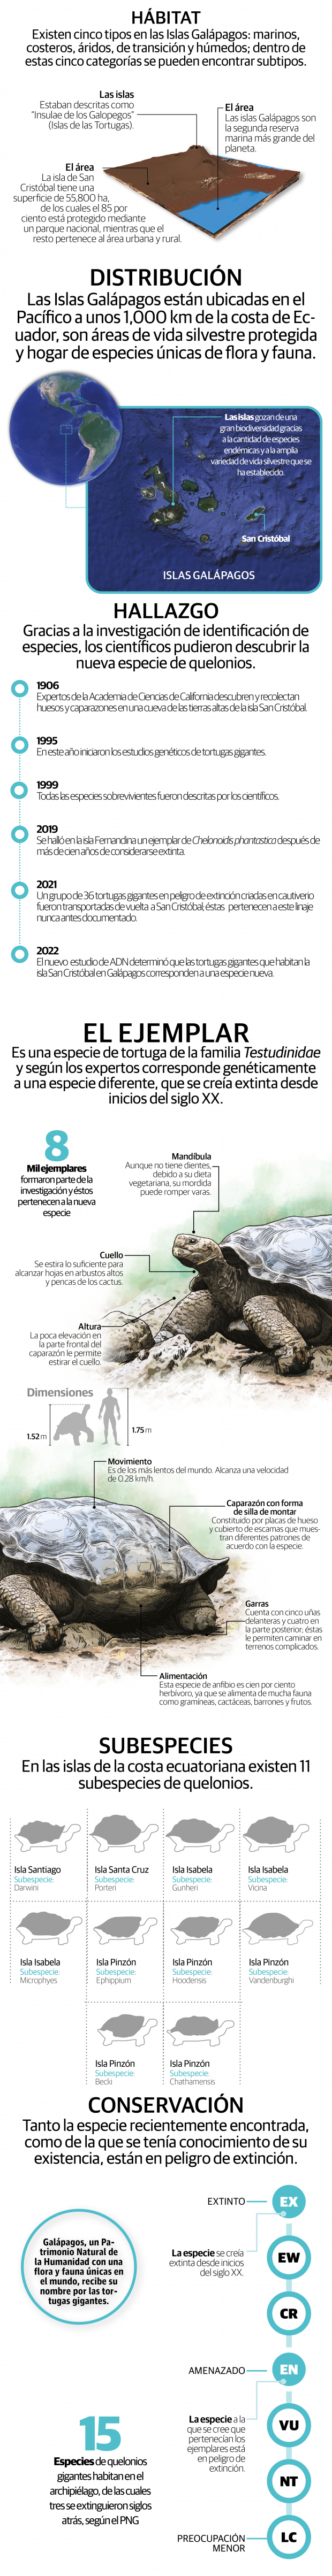 Científicos encuentran nueva especie de tortuga gigante en Islas Galápagos